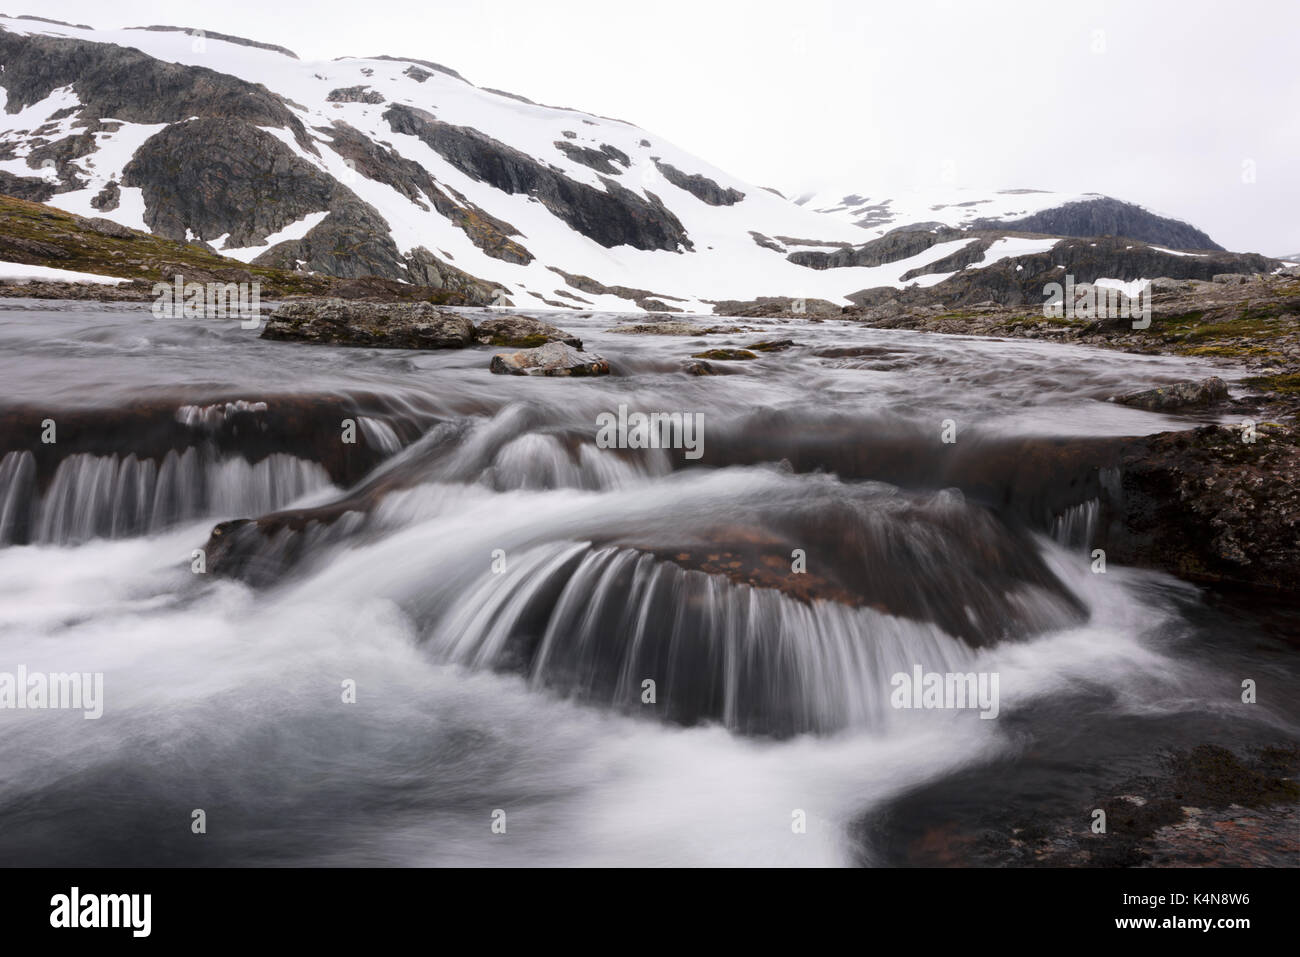 Typisch norwegische Landschaft mit schneebedeckten Bergen Stockfoto